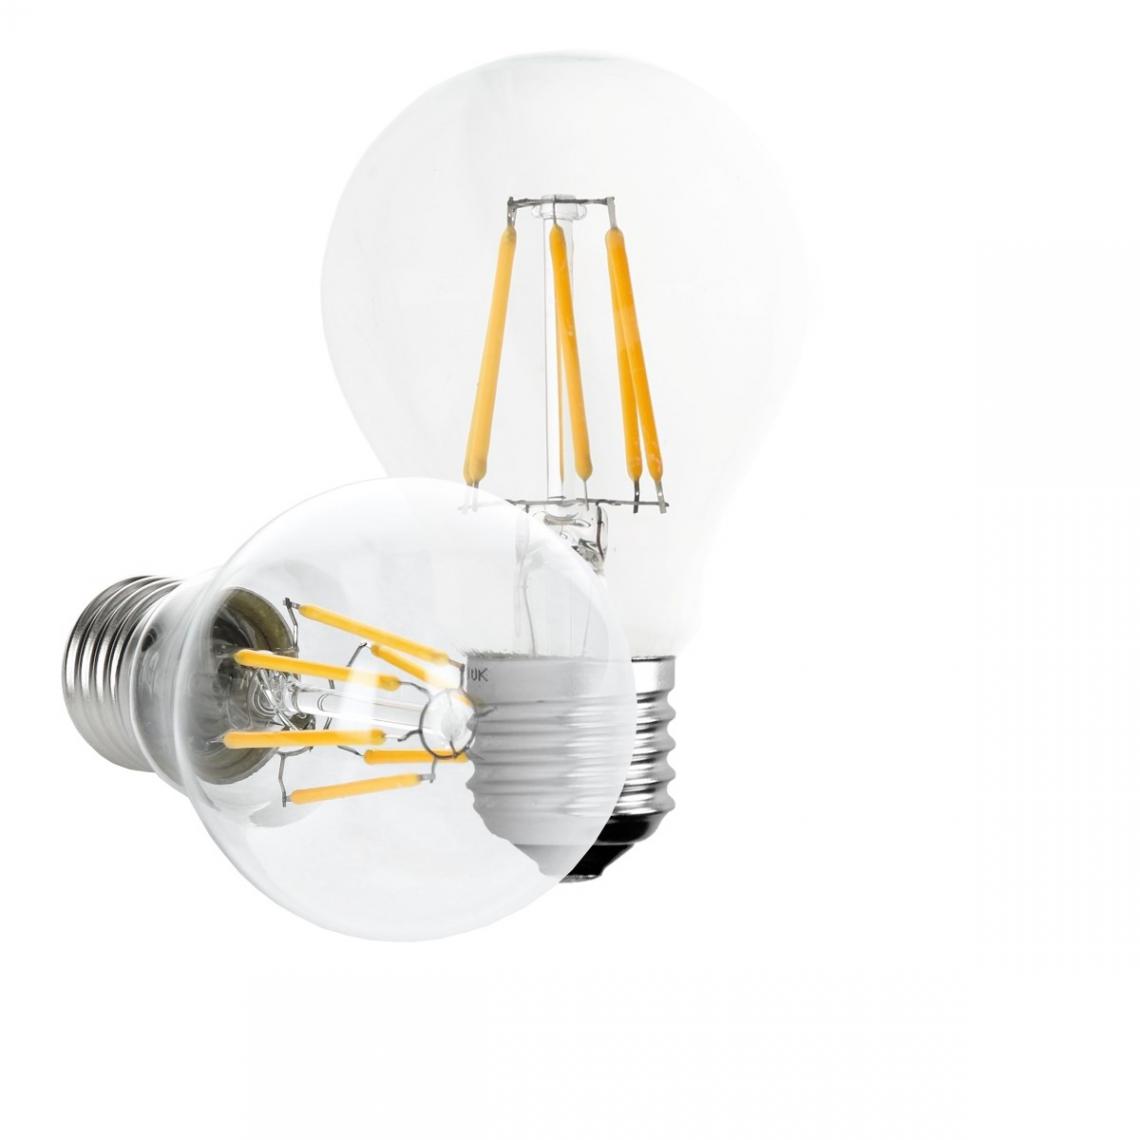 Ecd Germany - ECD Germany 5 x LED Filament de l'ampoule E27 classique Edison 6W 612 lumens angle de faisceau 120 ° AC 220-240 reste caché et remplace environ 40W lampe incandescente blanc chaud - Ampoules LED